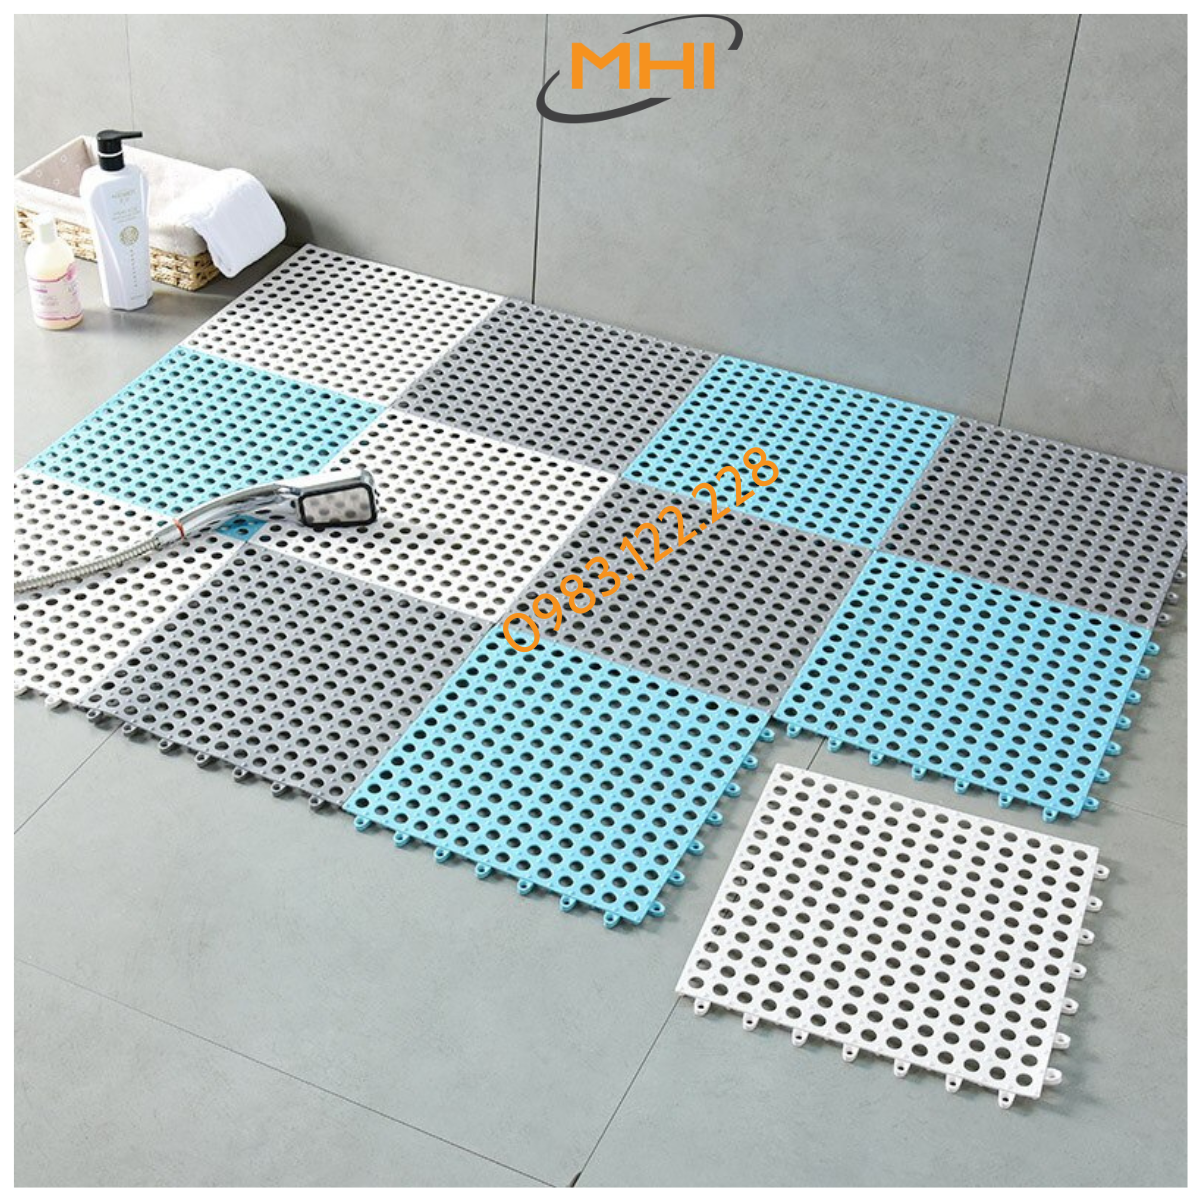 Tấm lót sàn nhà vệ sinh MHI. Vỉ nhựa lót sàn chống trơn Trải Sàn Nhà Tắm/Vệ Sinh/Nhà Bếp